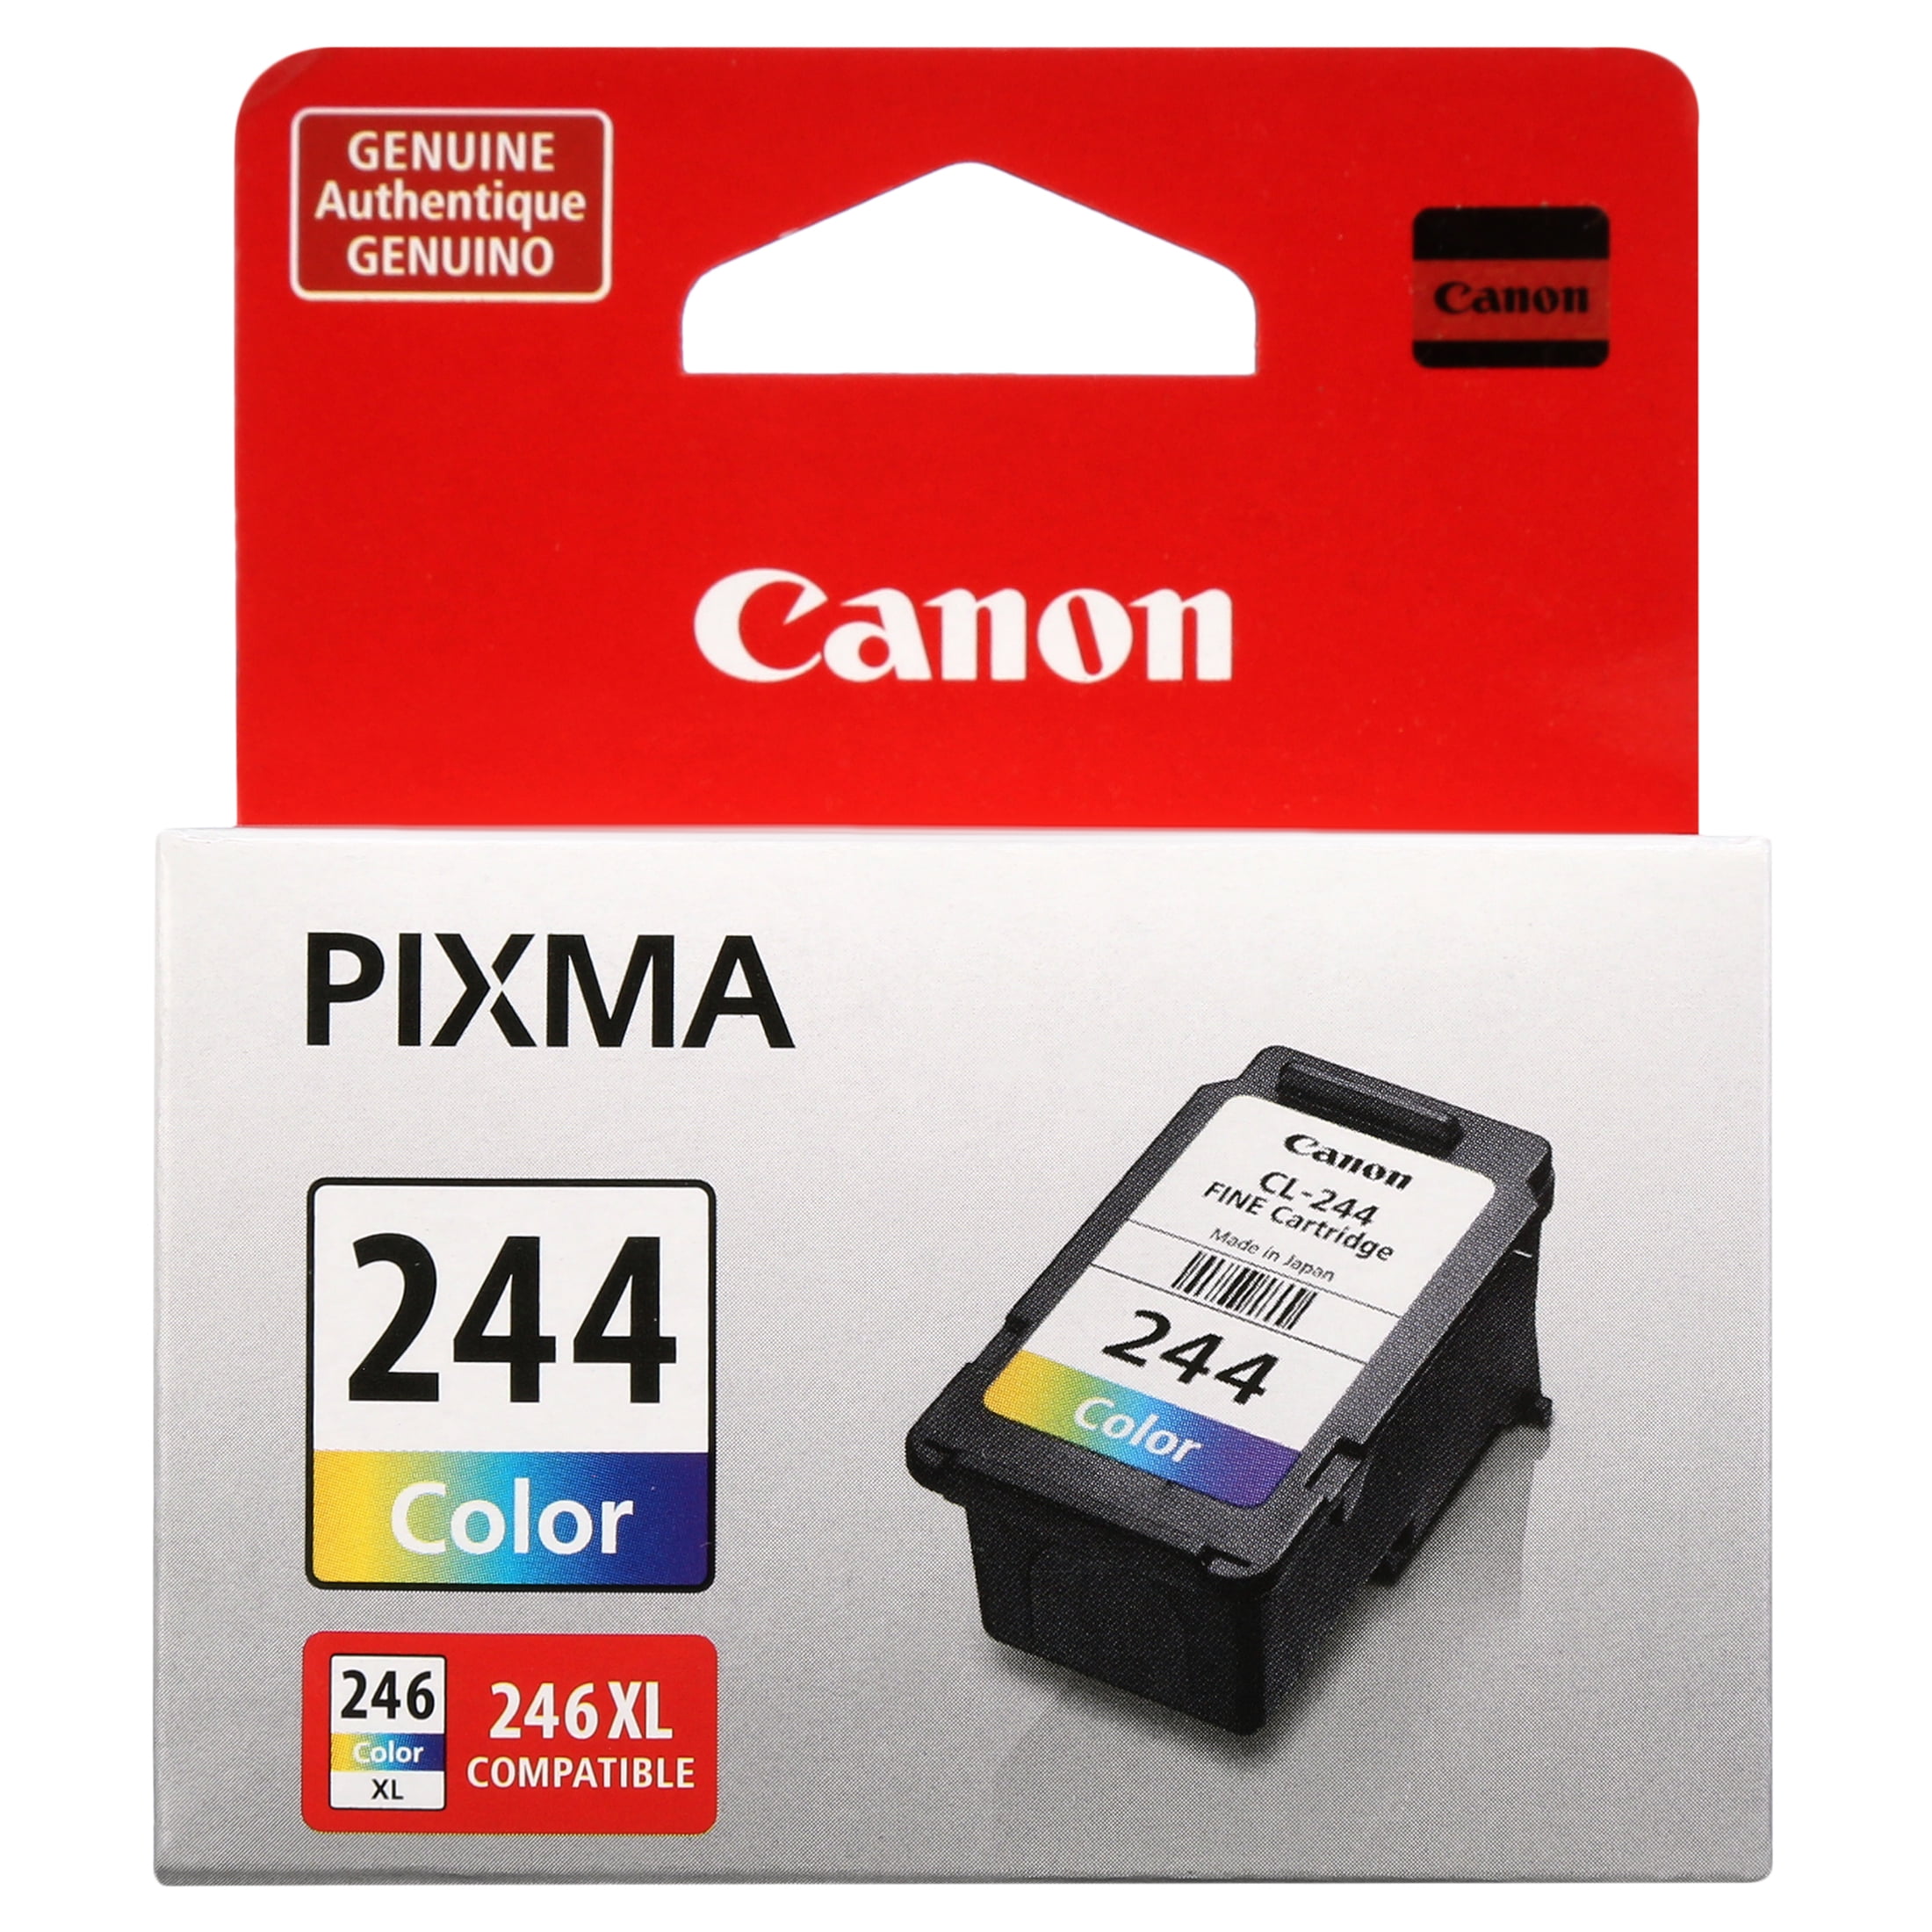 Cartouches d'encre compatibles CANON série PG-545 XL / CL-546 XL